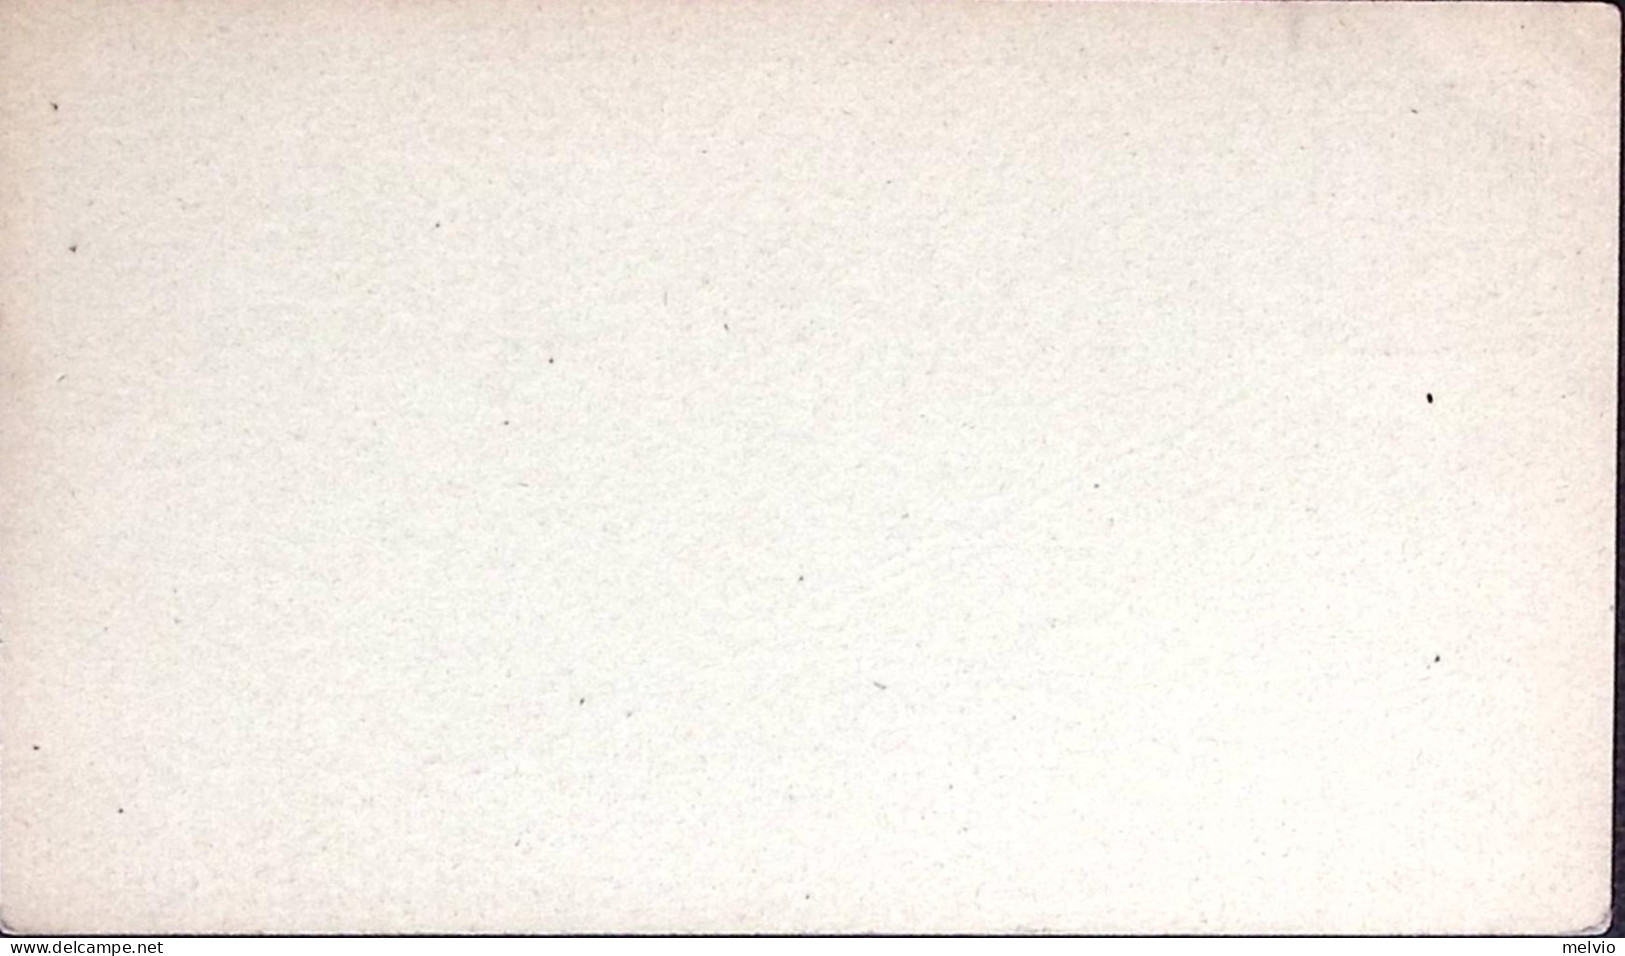 1882-Cartolina Postale PER ESTERO Umberto C.10 Senza Millesimi Nuova - Postwaardestukken